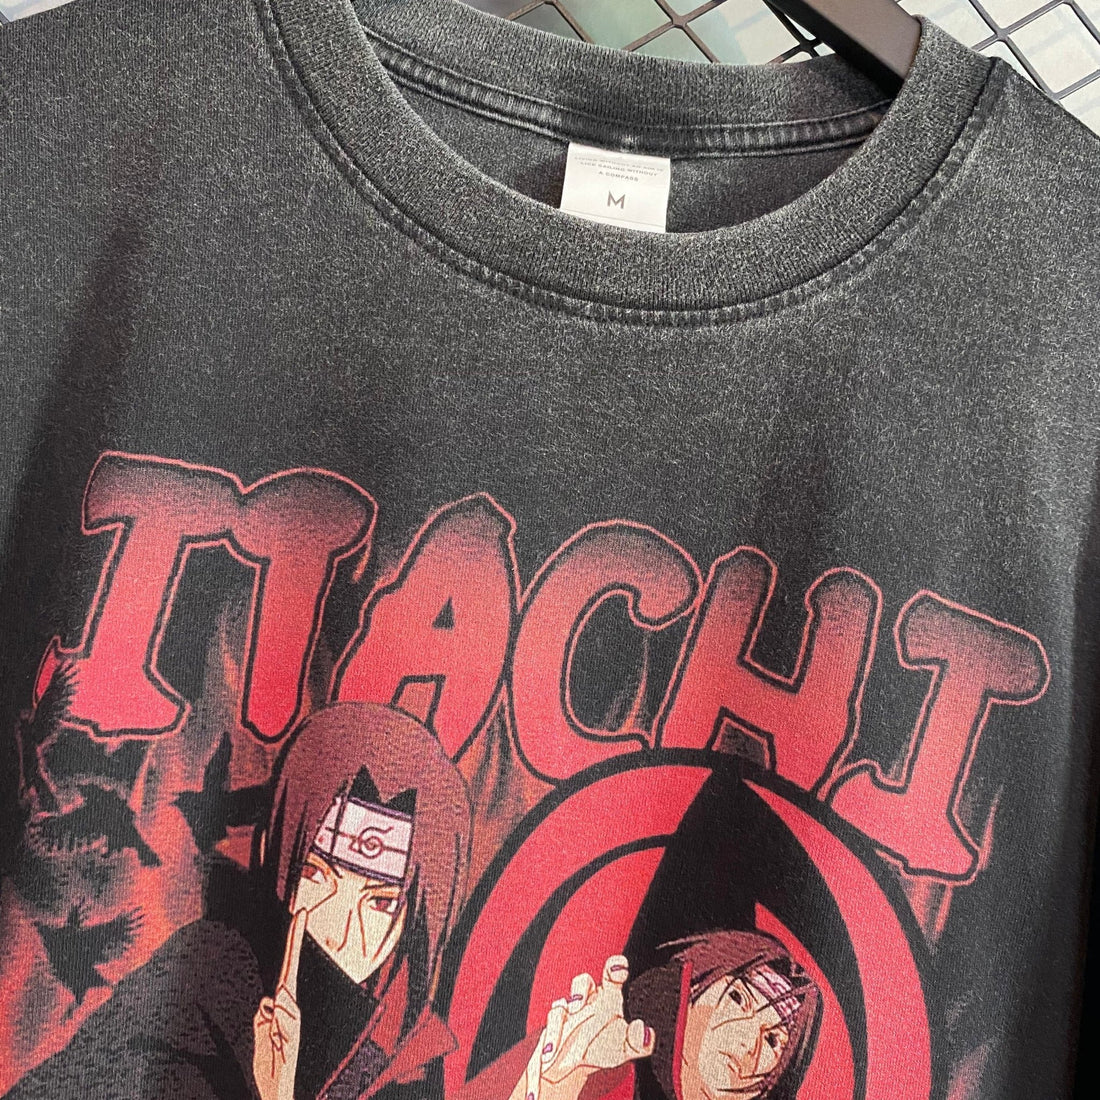 Itachi Shirt - Seakoff